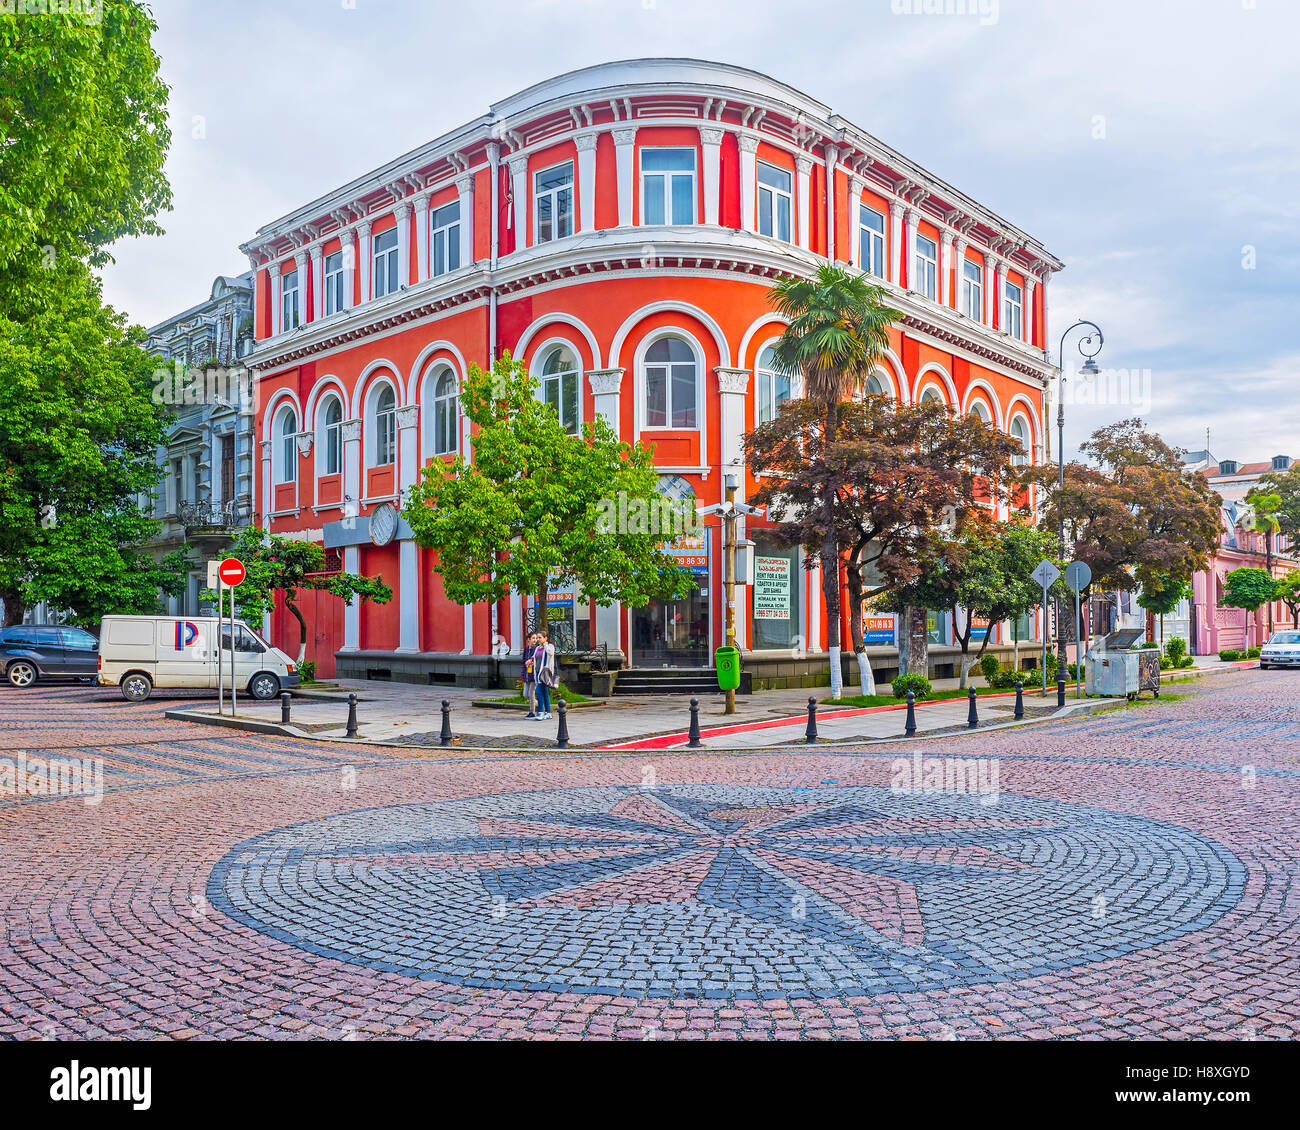 Il palazzo rosso nel quartiere turistico e la rosa dei venti della pavimentazione in pietra il bivio Foto Stock